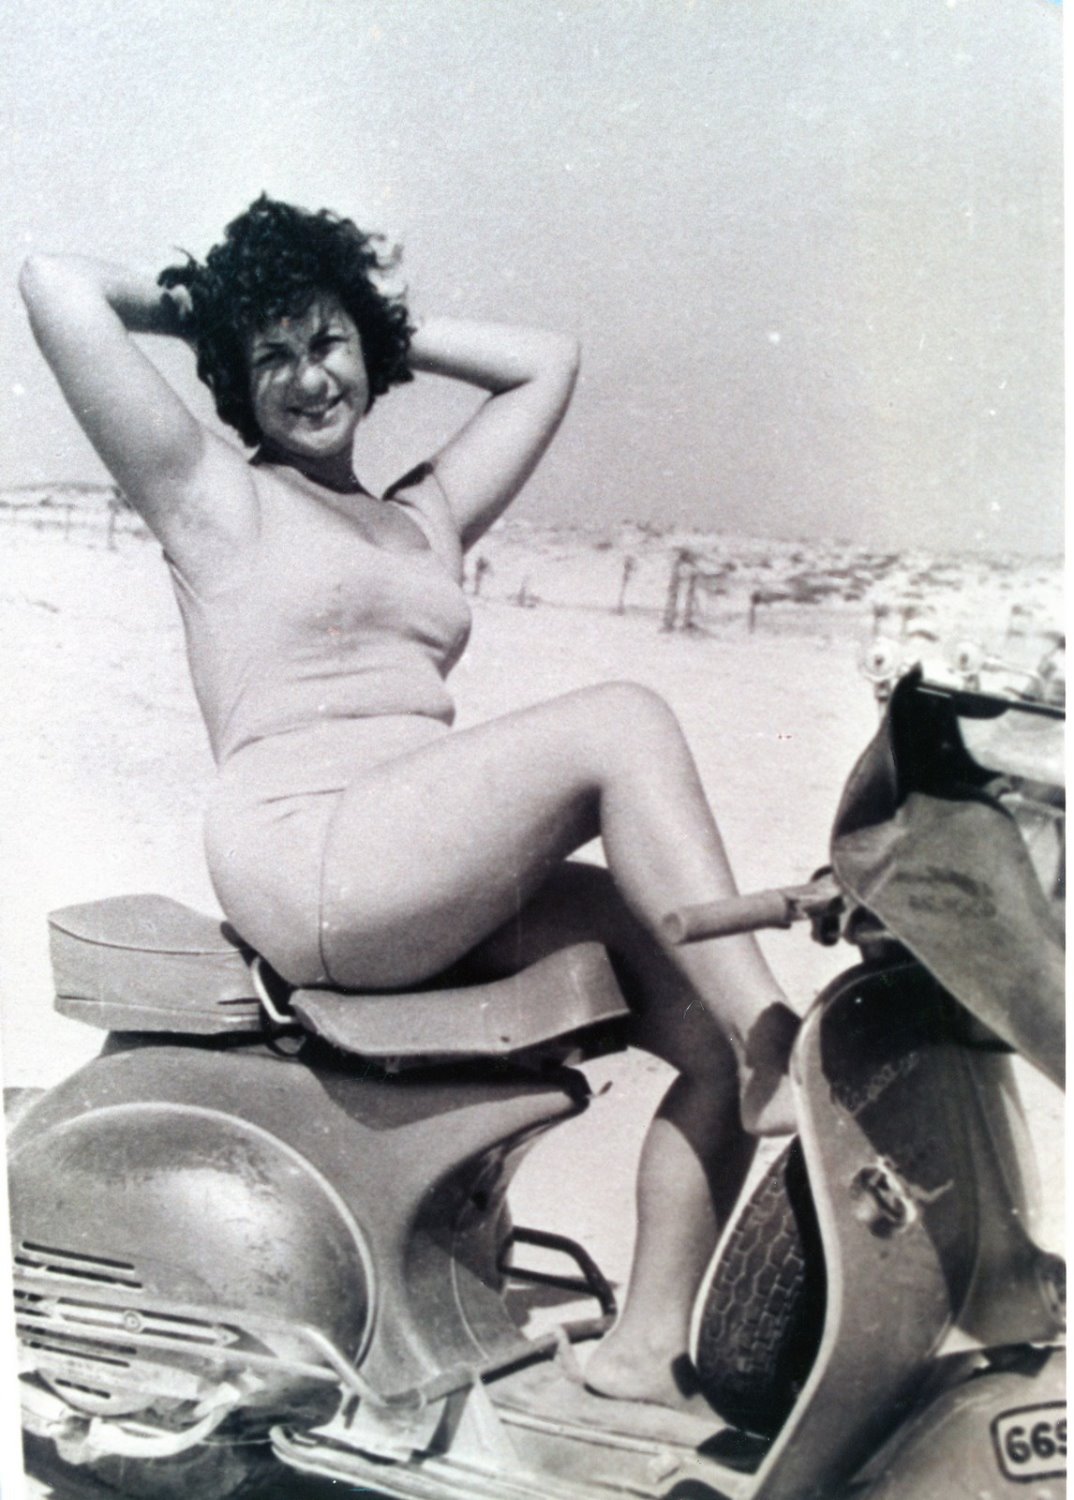 אלכסנדרה ז"ל על קטנוע ברקע חולות אשדוד בראשית שנות ה- 60. צילום באדיבות הארכיון העירוני אשדוד